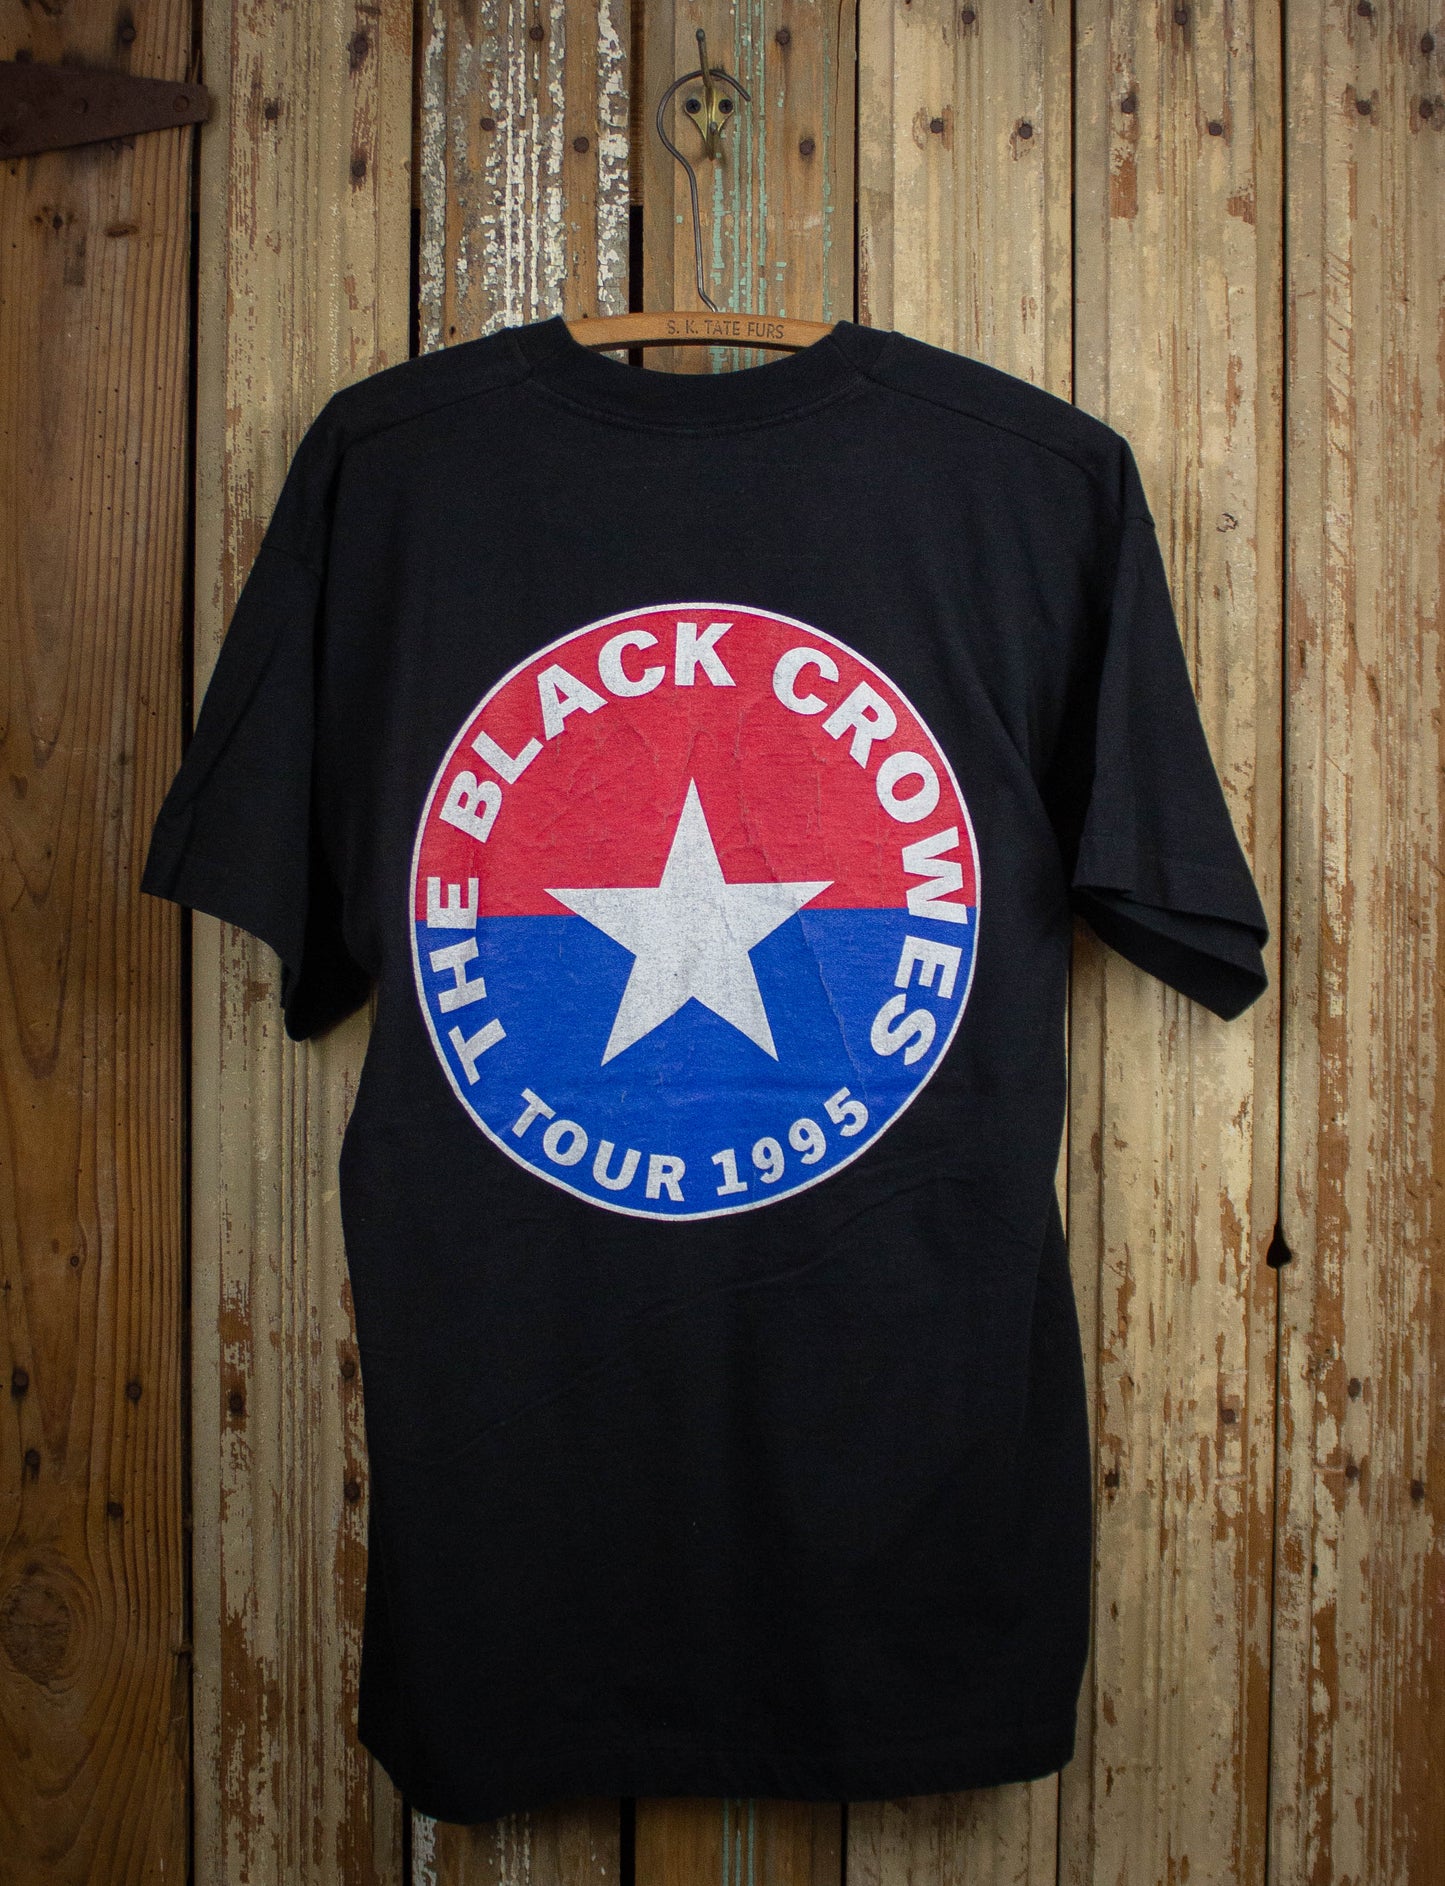 Vintage Black Crowes Tour Concert T Shirt 1995 Black XL